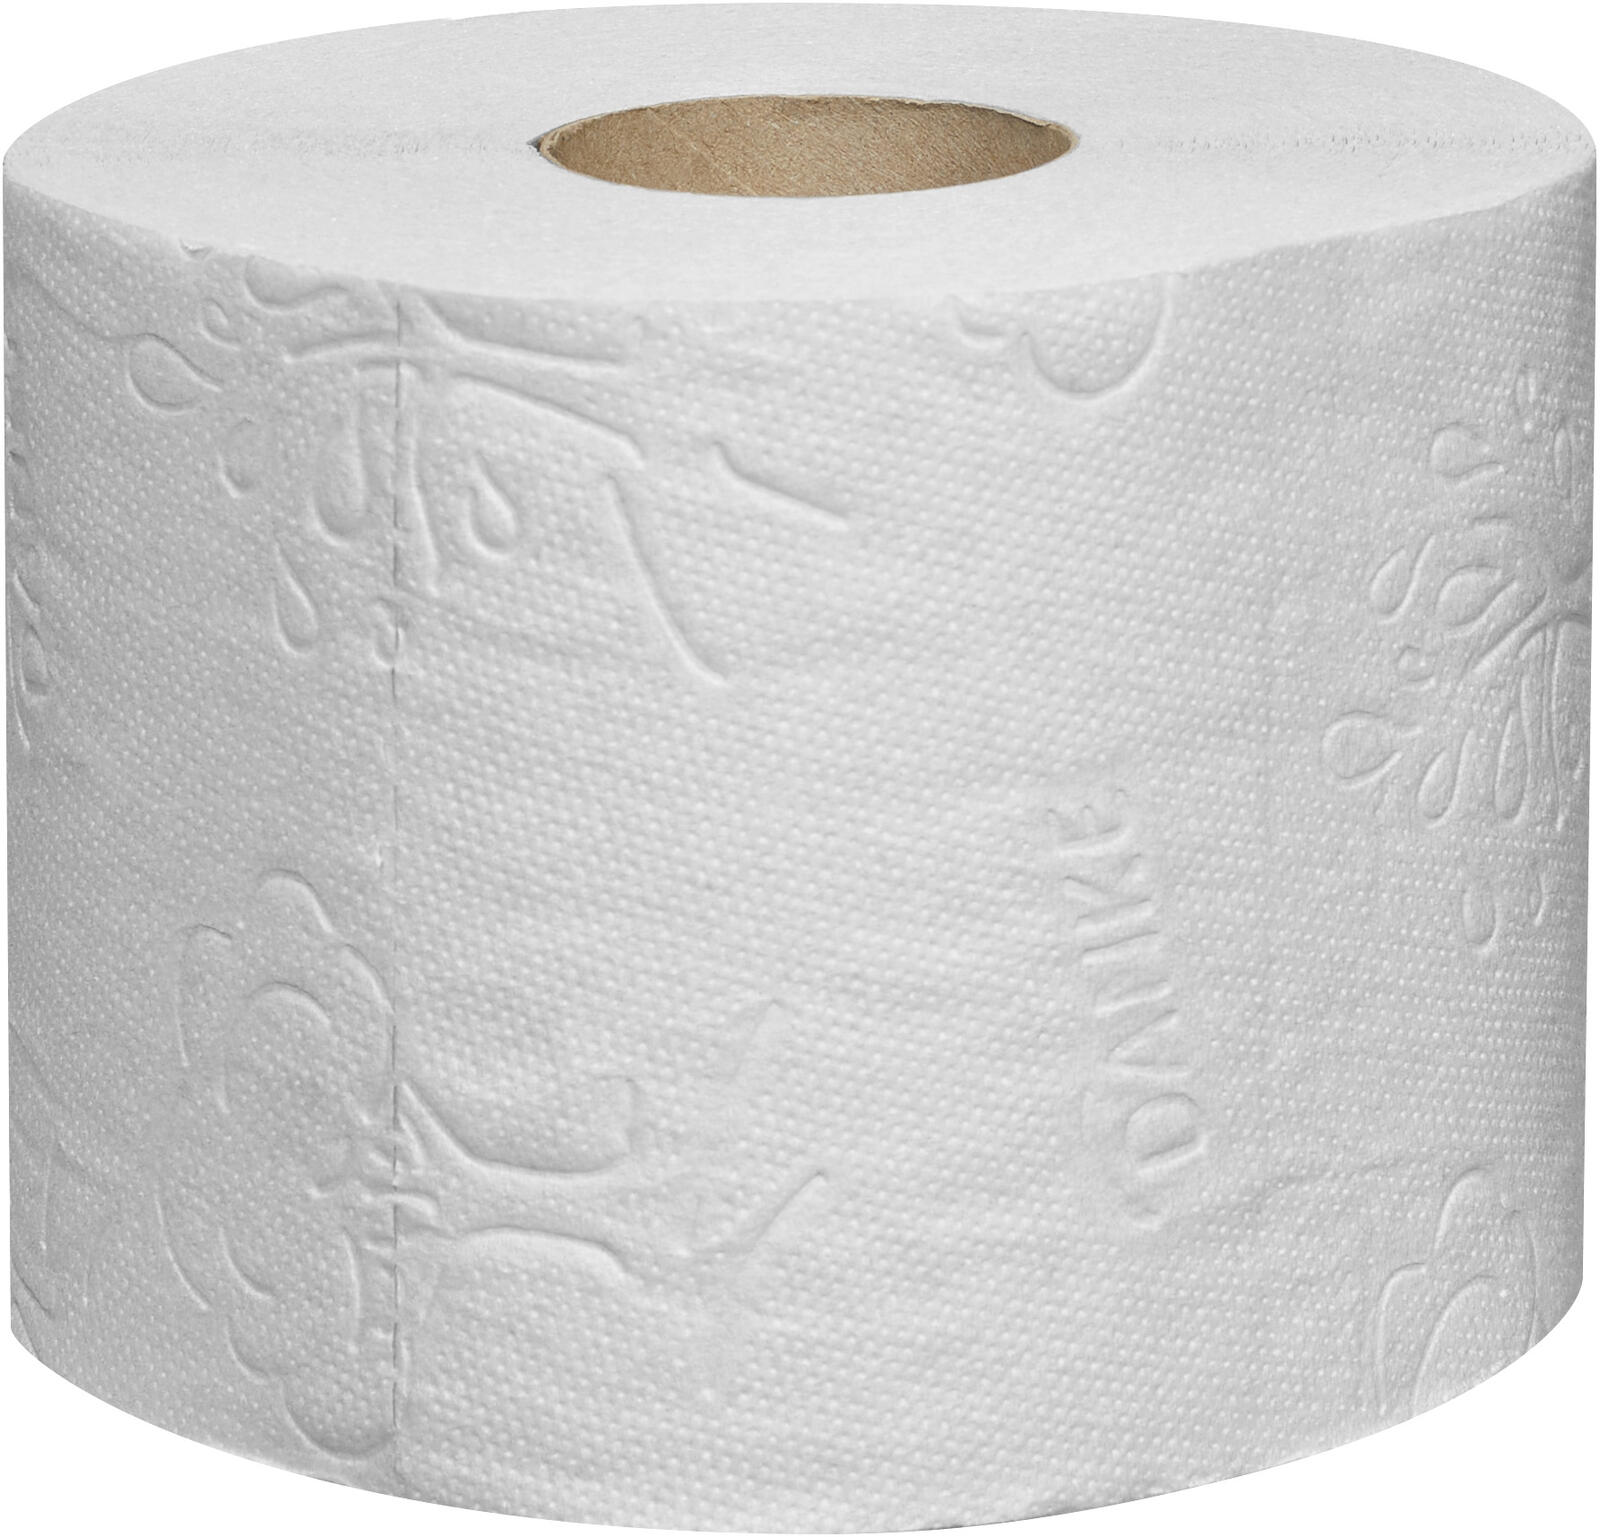 DANKE Toilettenpapier DANKE Toilettenpapier 8Ro 3-lagig 8 Rollen